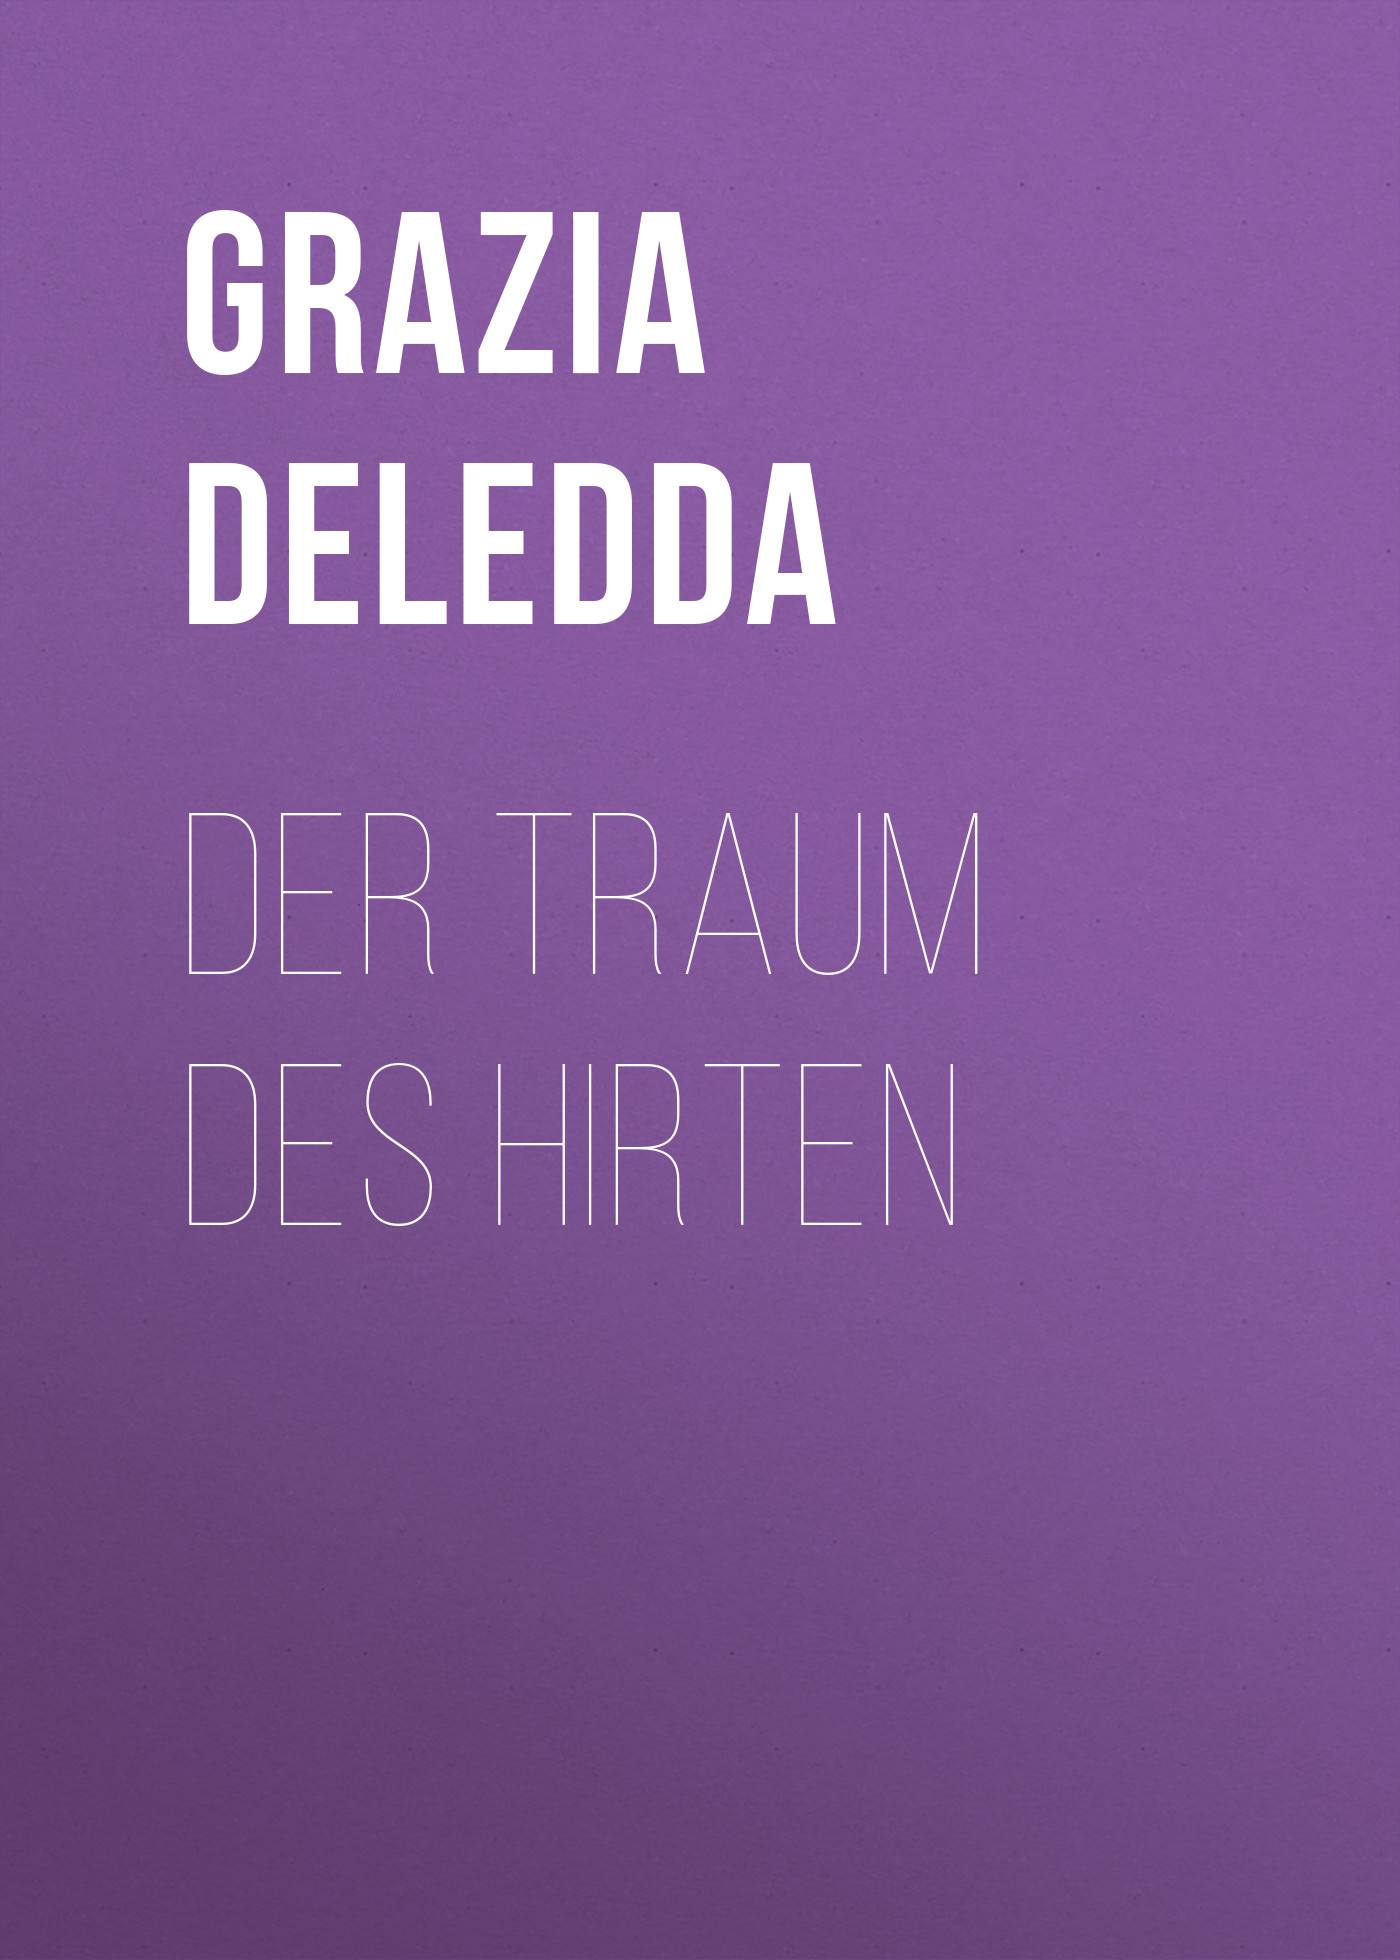 Книга Der Traum des Hirten из серии , созданная Grazia Deledda, может относится к жанру Зарубежная классика. Стоимость электронной книги Der Traum des Hirten с идентификатором 48633380 составляет 0 руб.